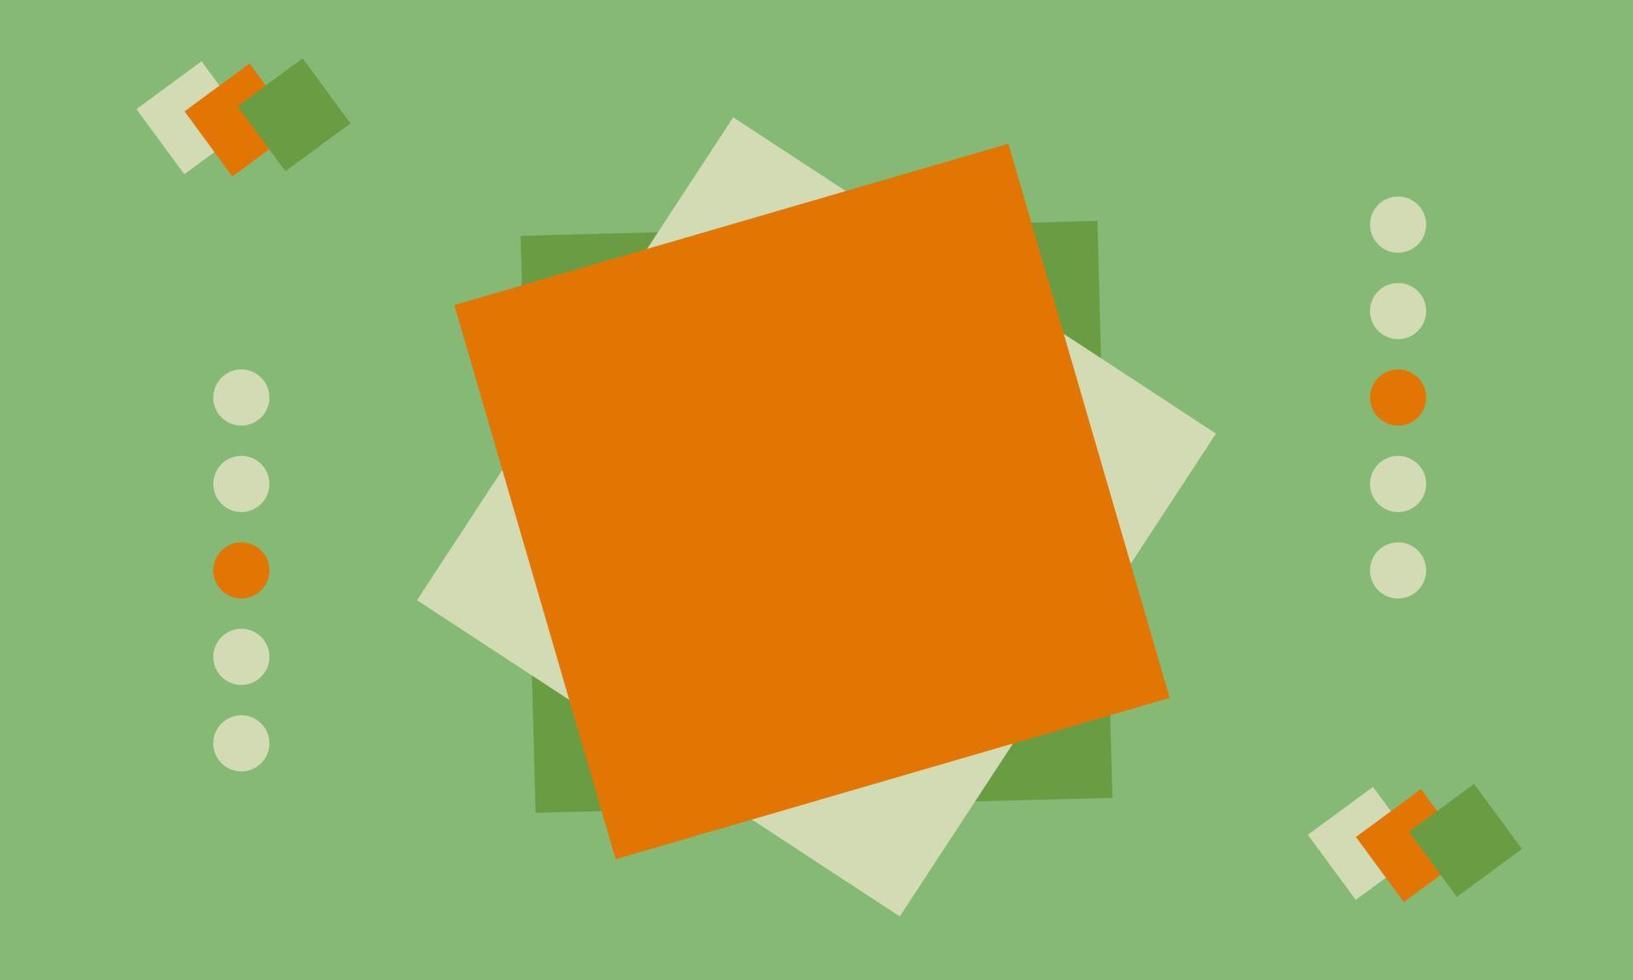 fond vert moderne avec des éléments et des formes orange, vert clair et blanc vecteur